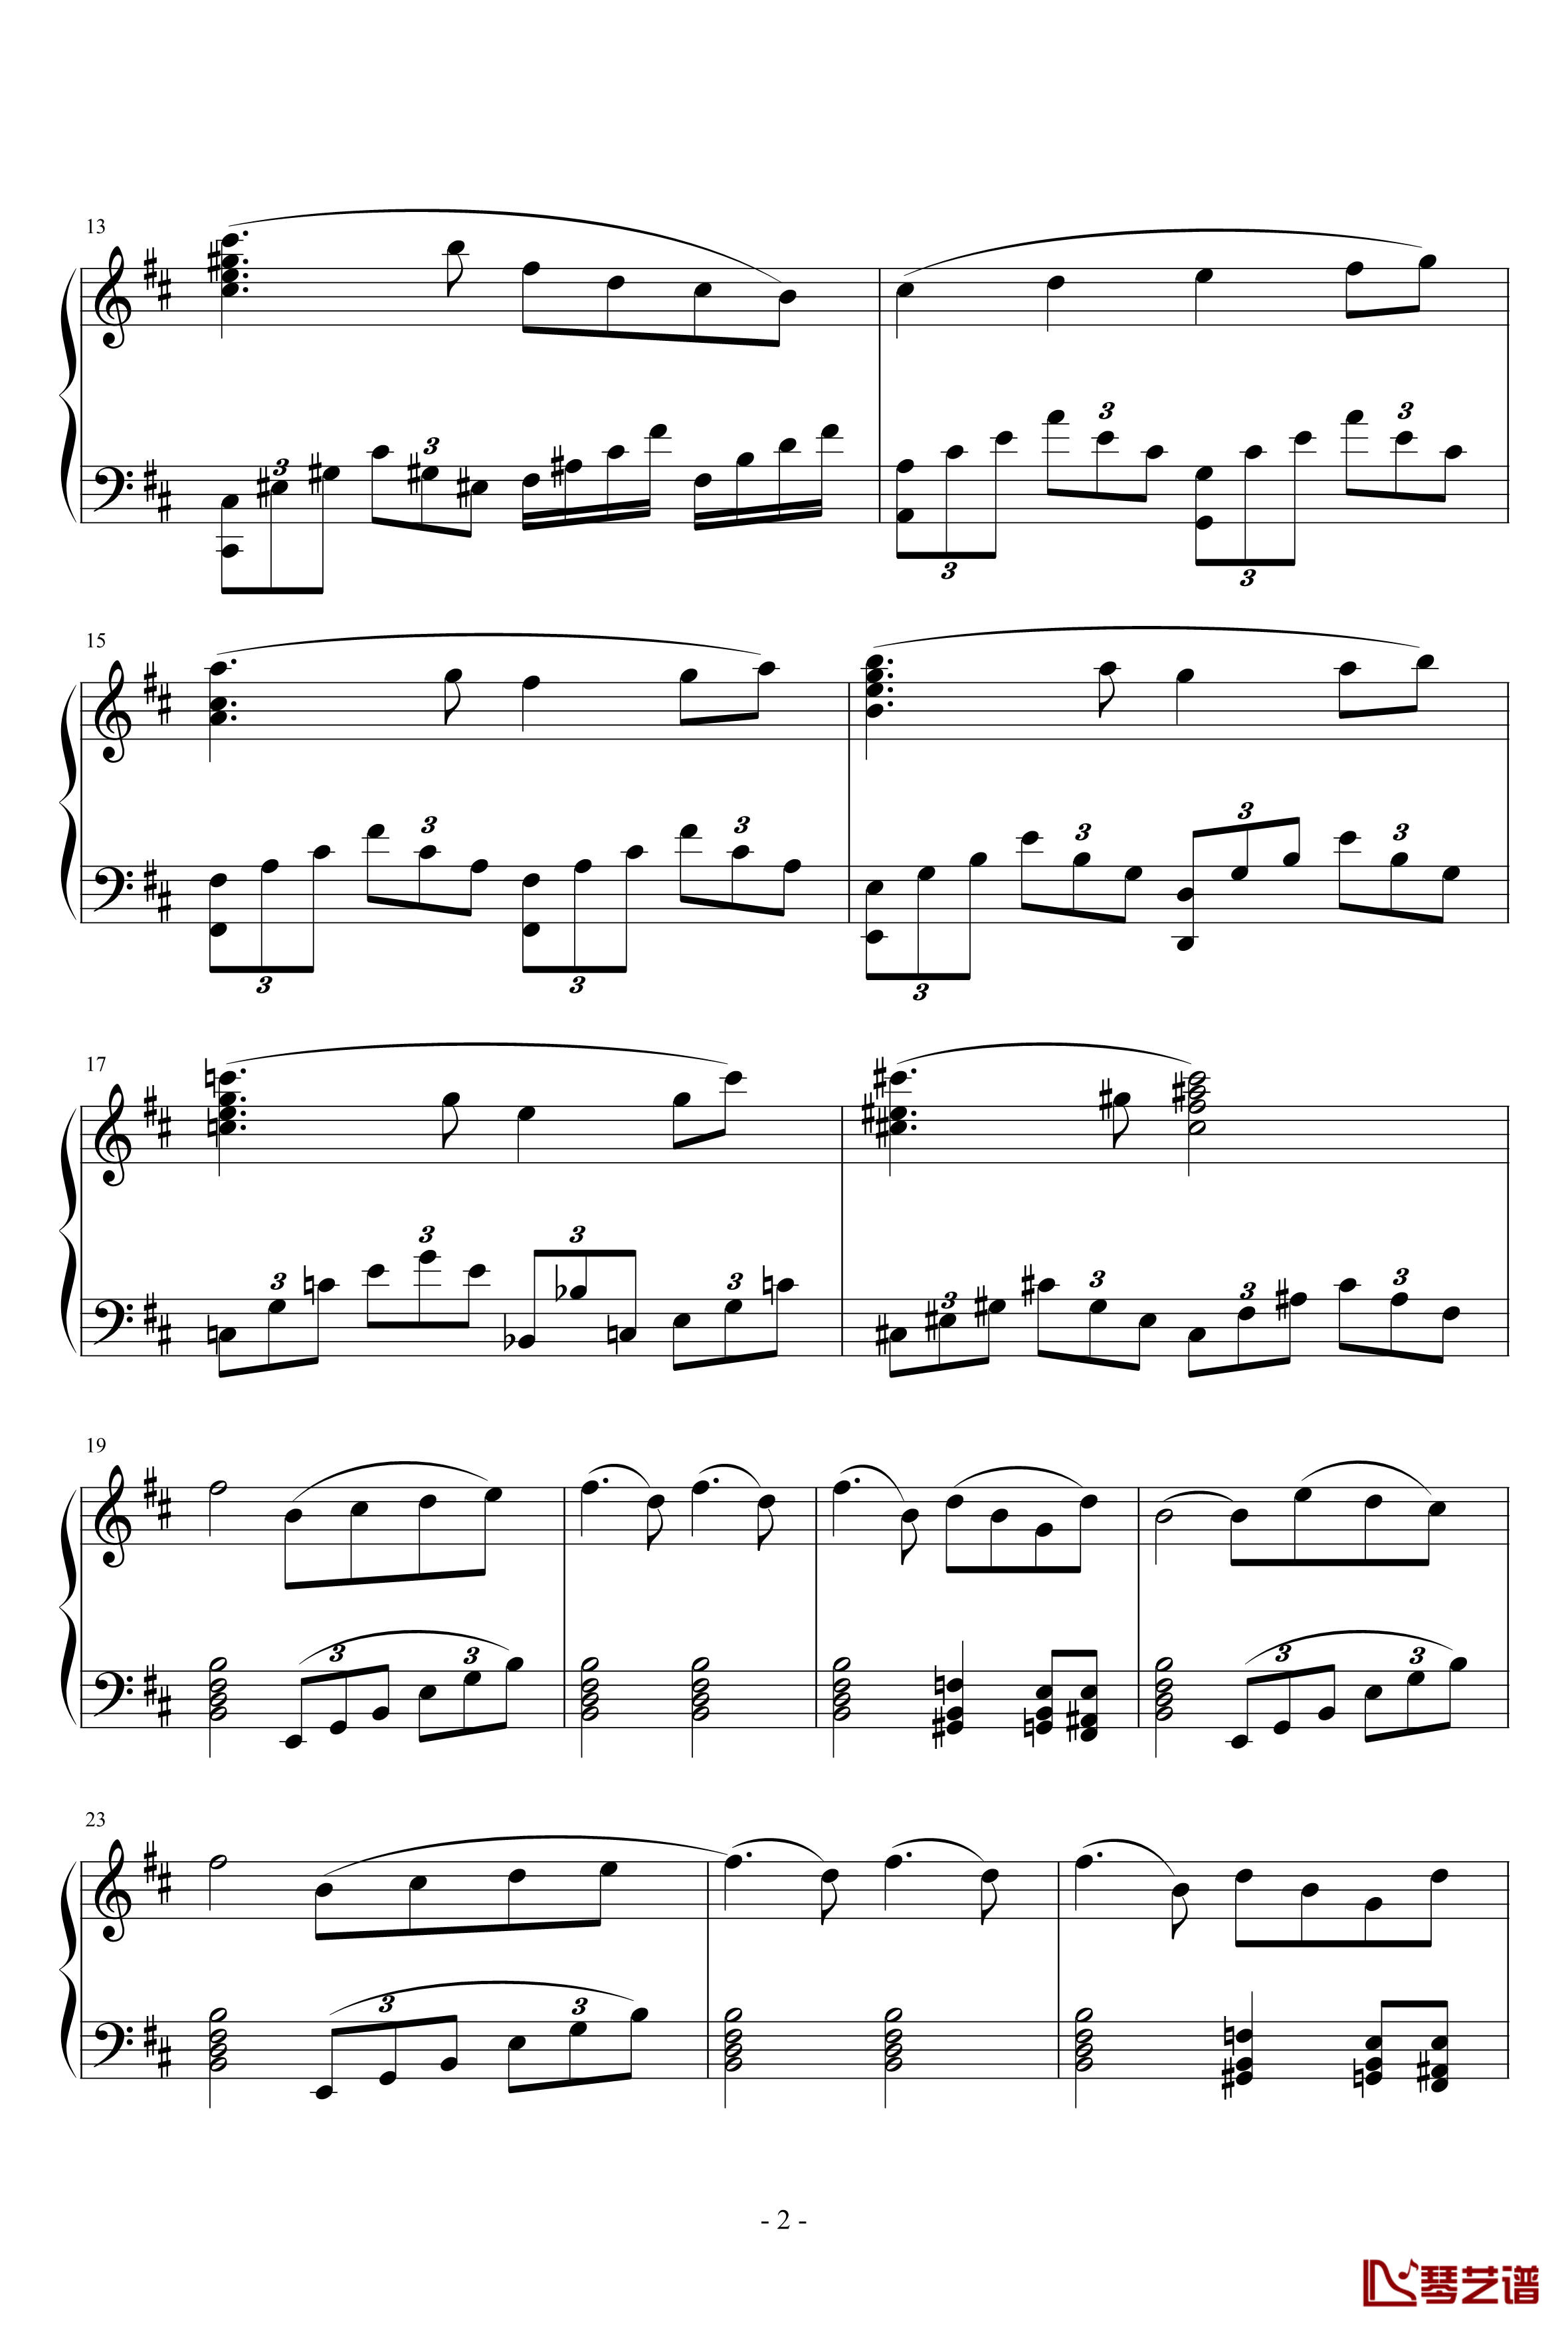 天鹅湖场景旋律钢琴谱-柴科夫斯基-Peter Ilyich Tchaikovsky